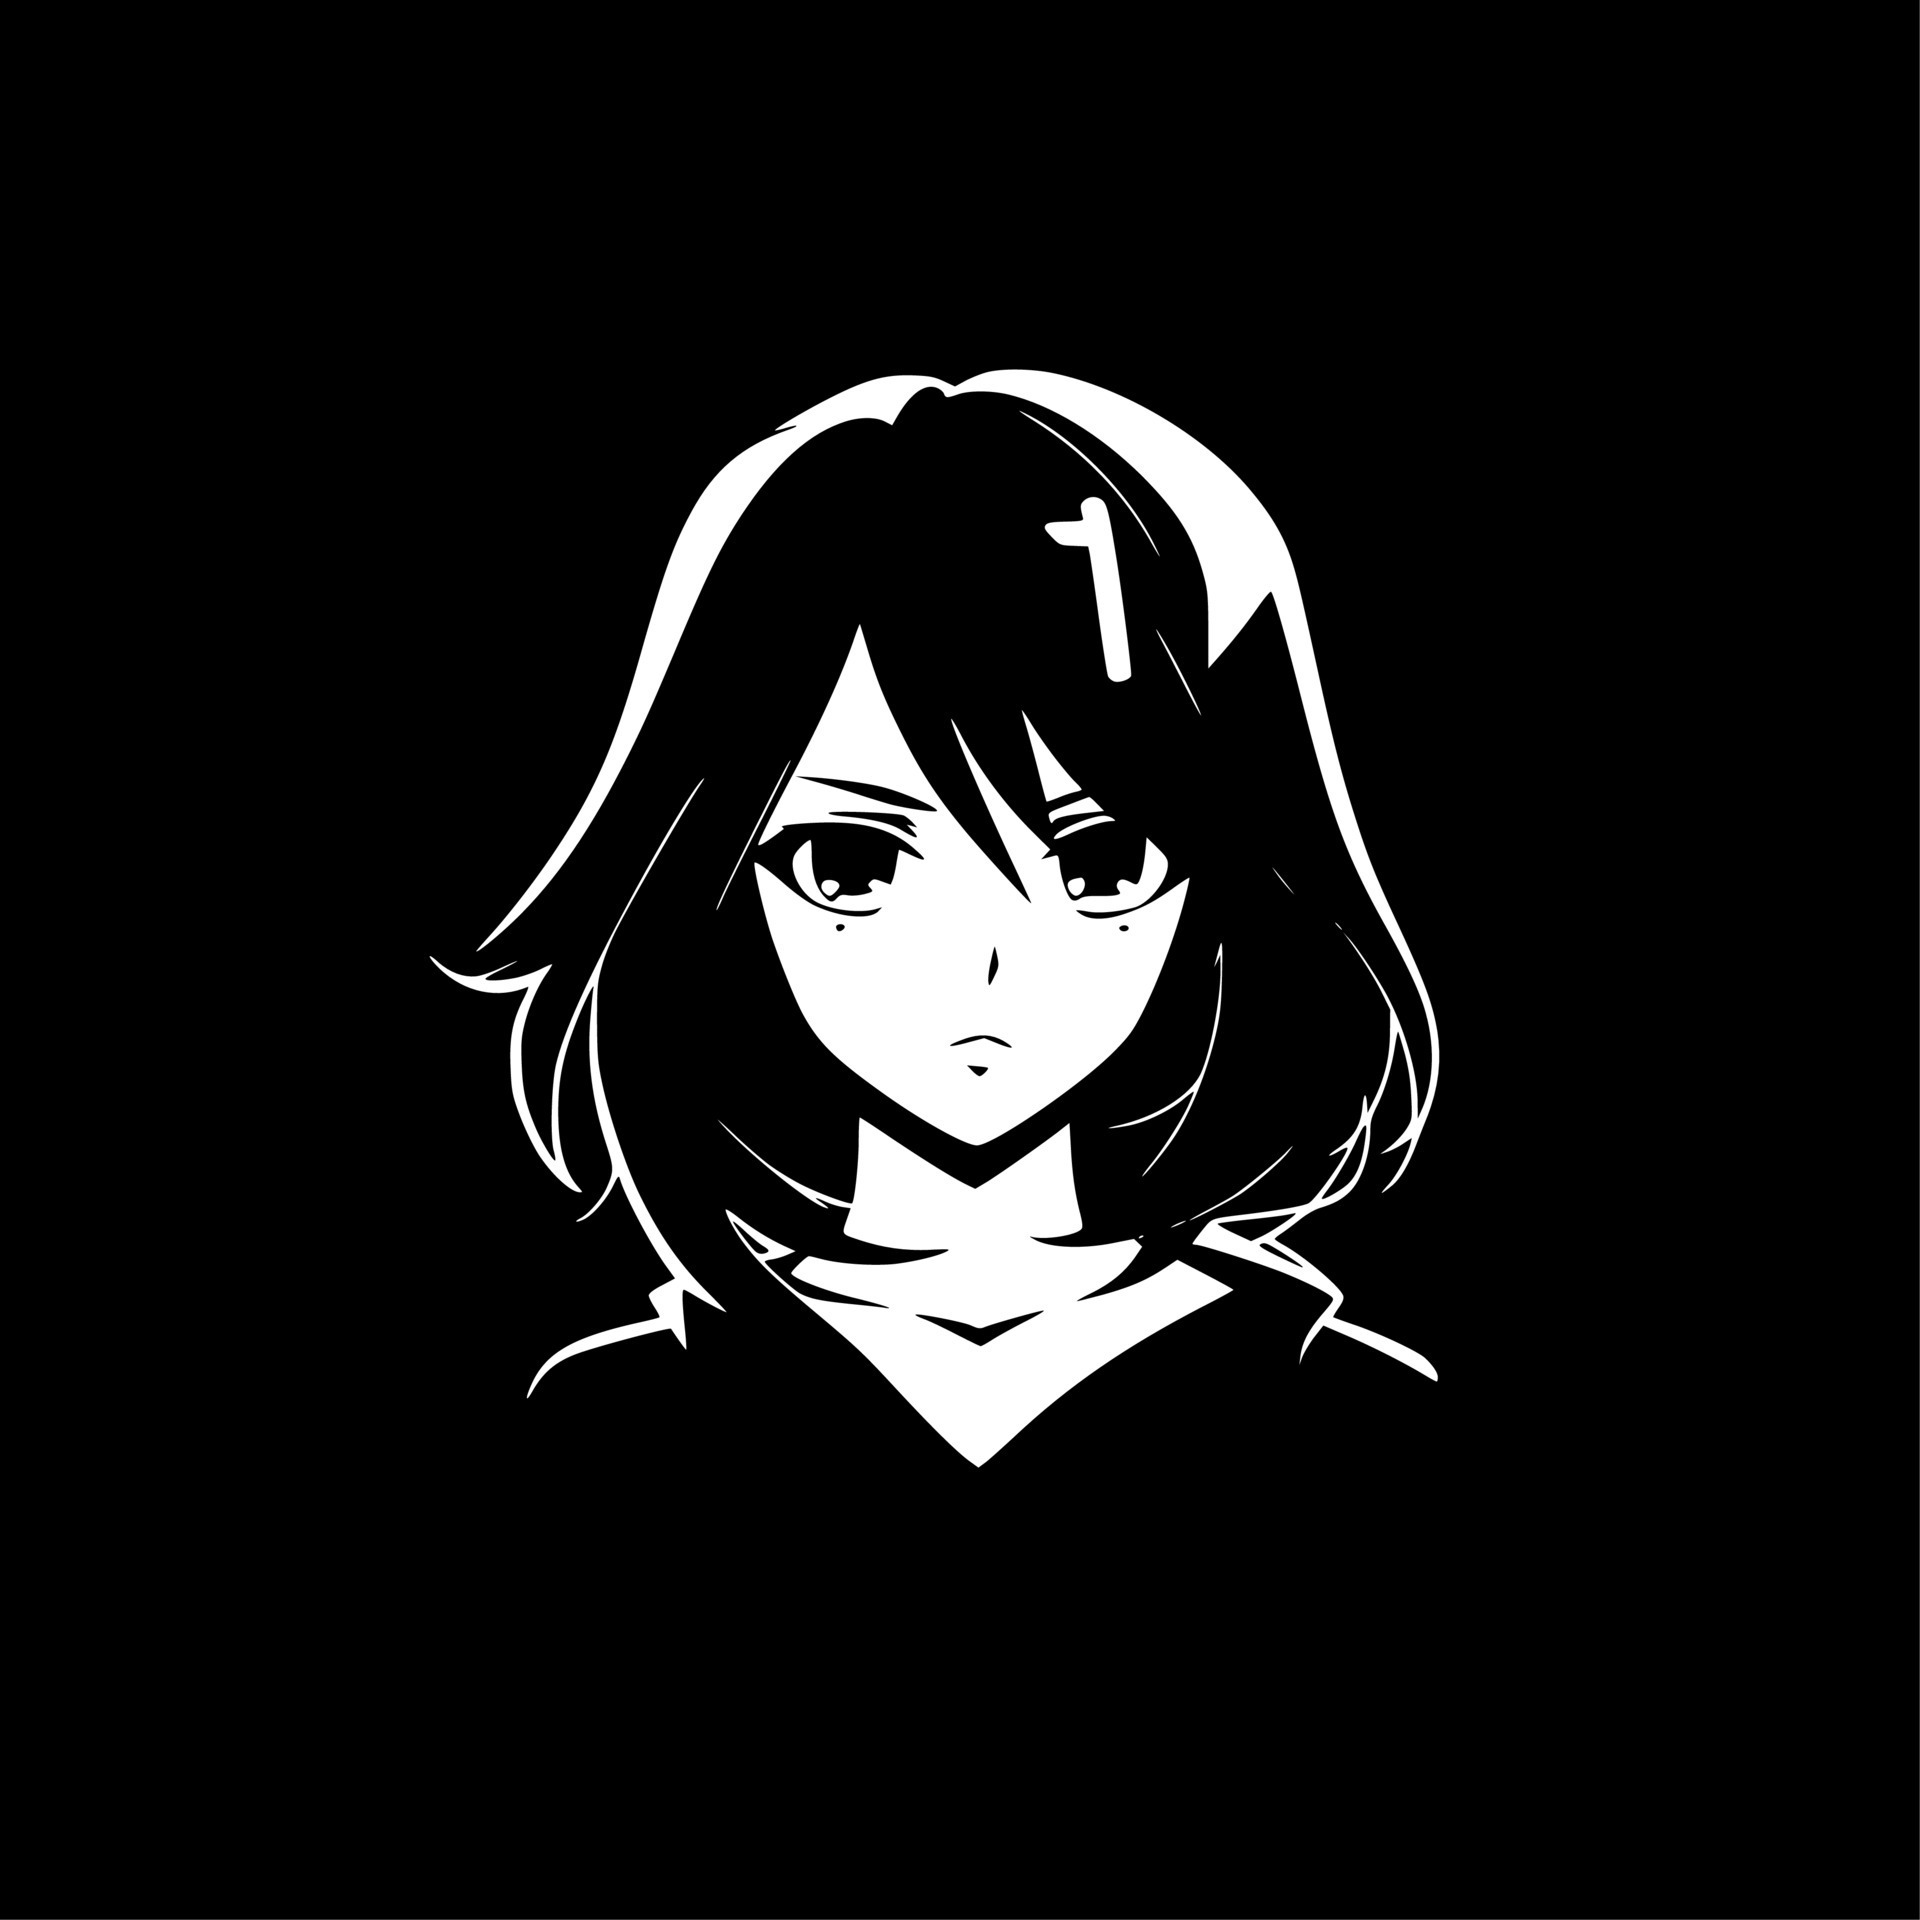 𝐀𝐍𝐈𝐌𝐄 𝐈𝐂𝐎𝐍  Dark anime girl, Dark anime, Anime art dark